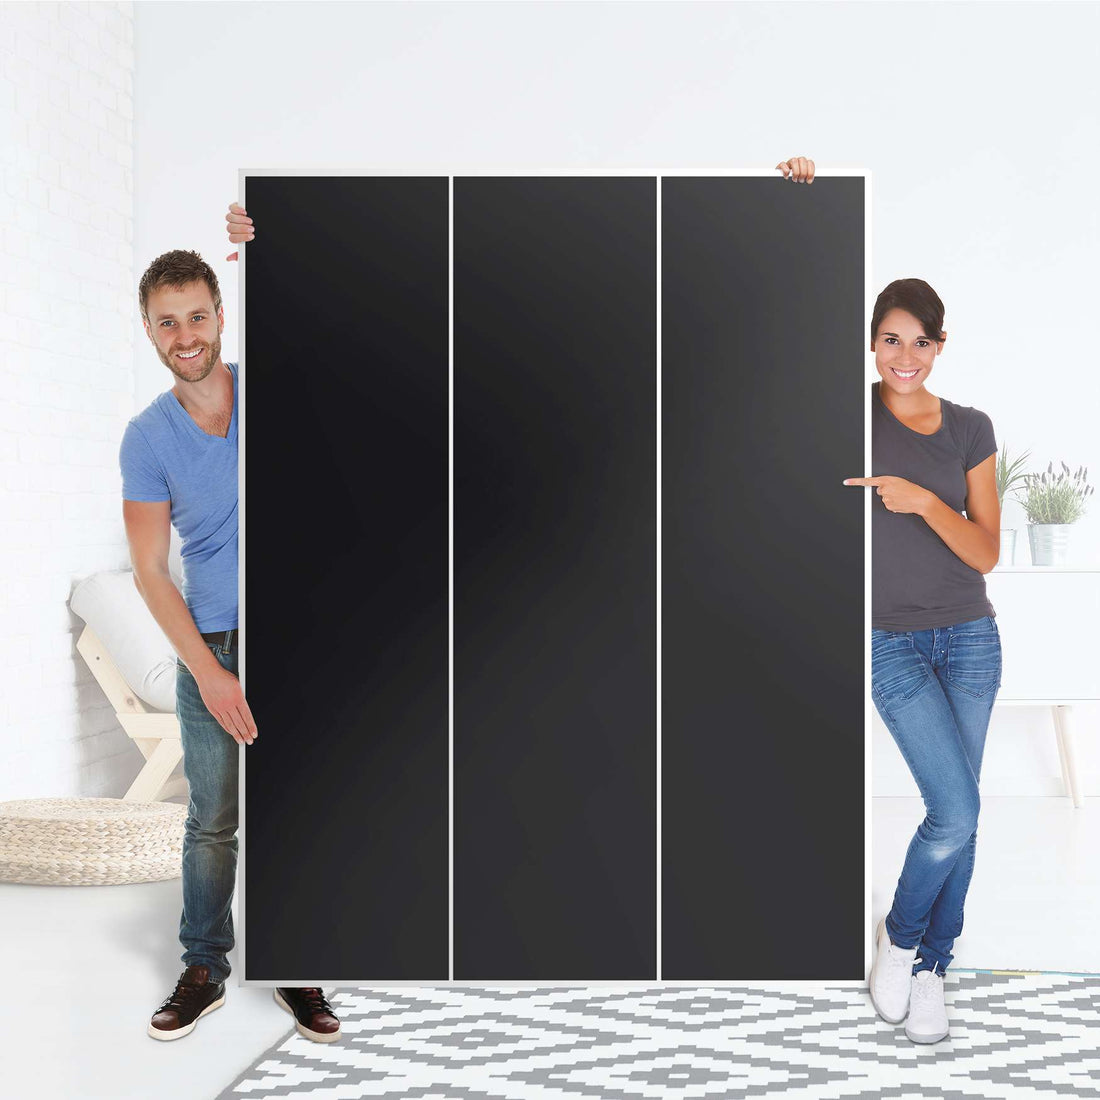 Folie für Möbel Schwarz - IKEA Pax Schrank 201 cm Höhe - 3 Türen - Folie